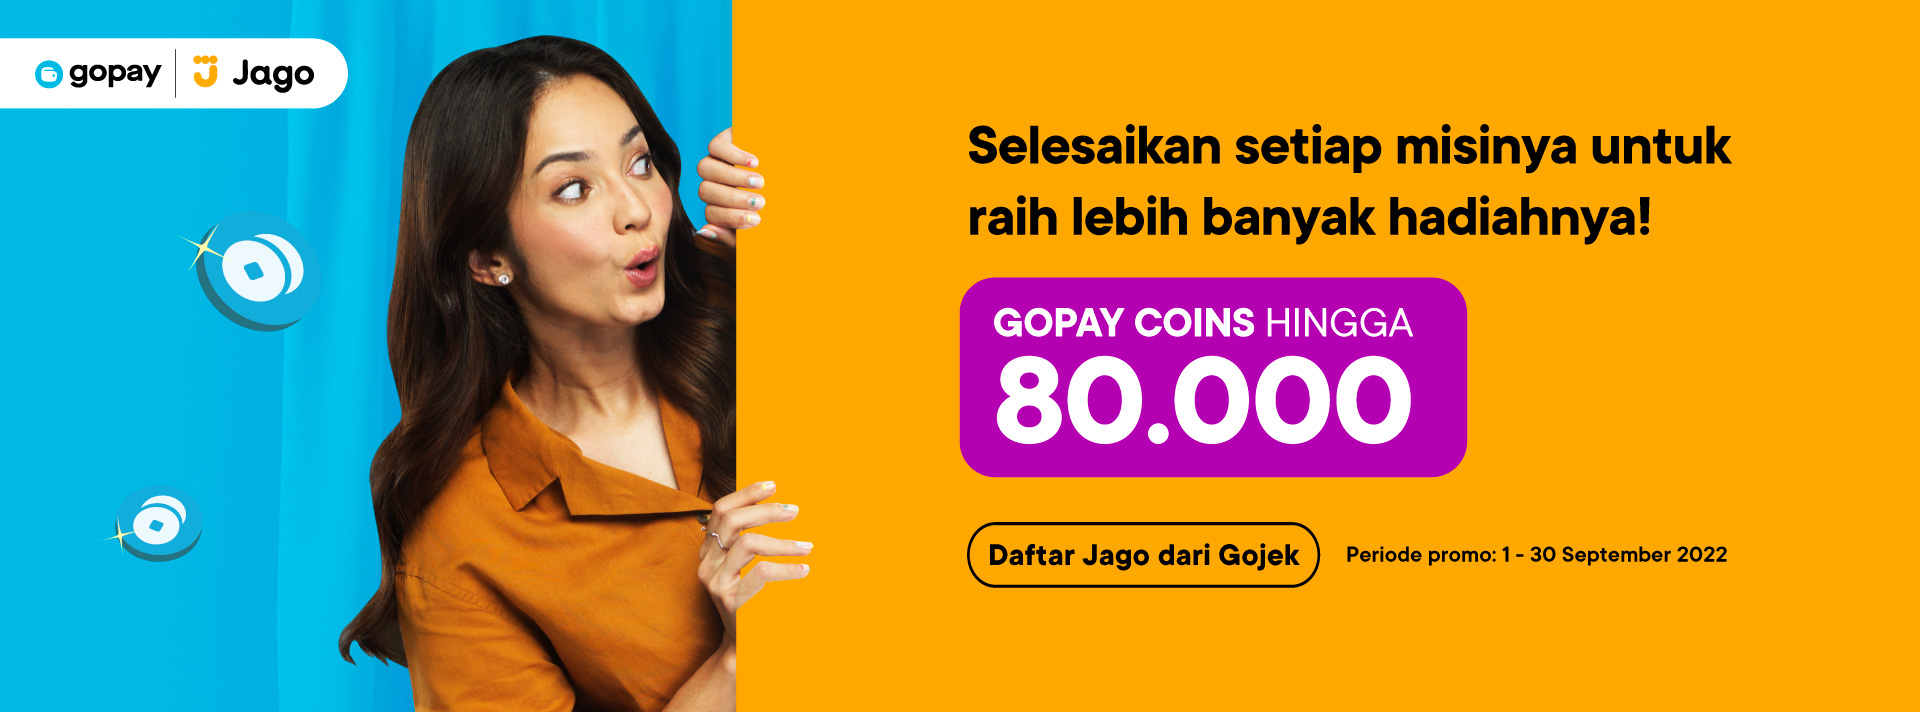 GoPay Jago - 80rb Gopay Coins